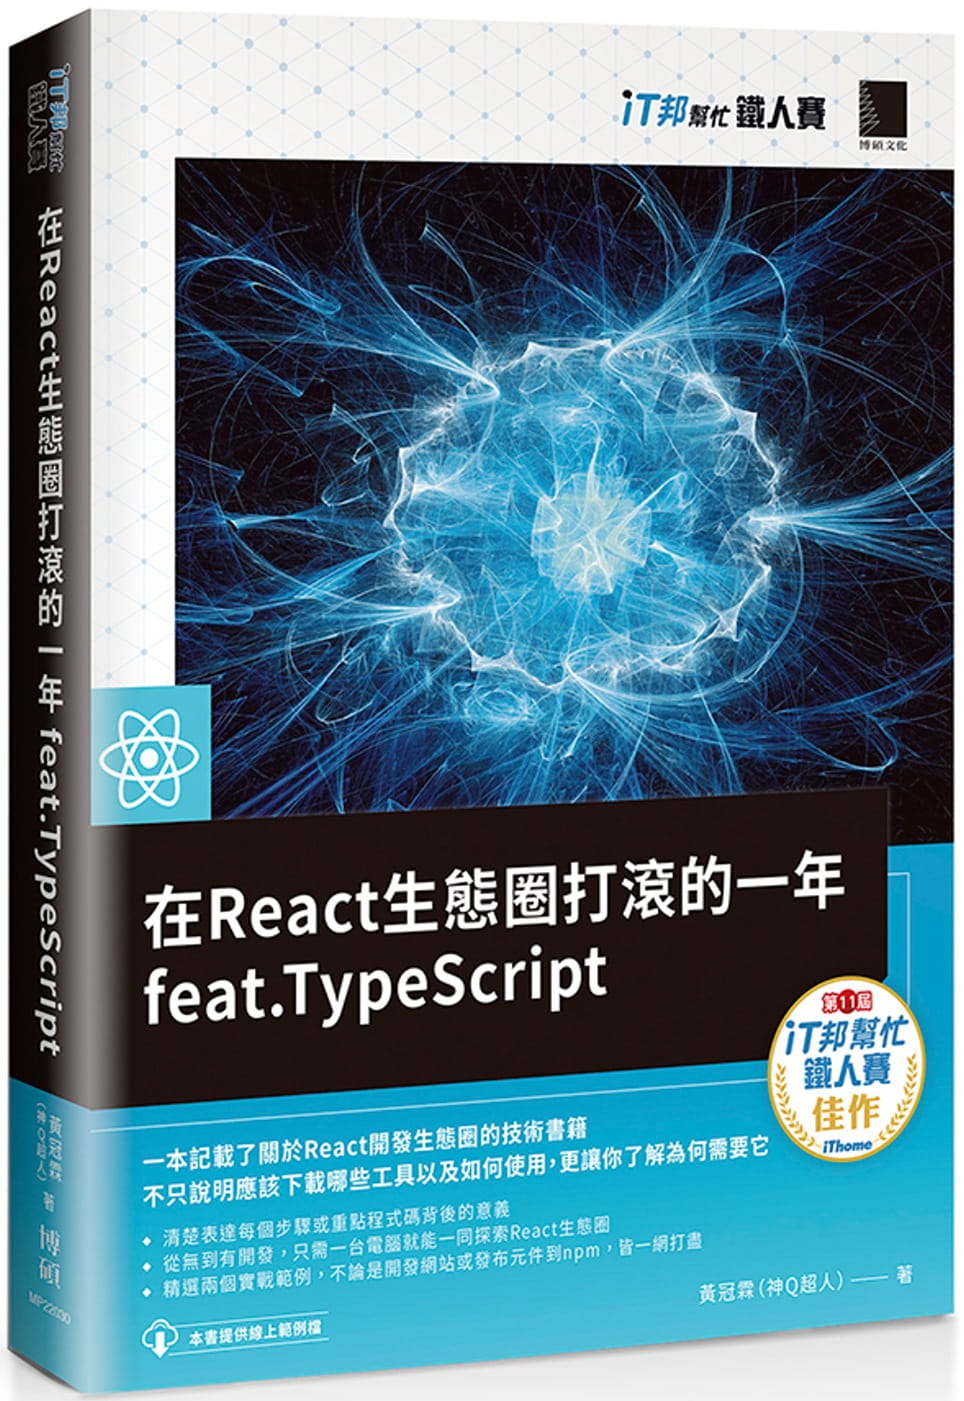 在React生態圈打滾的一年feat.TypeScript（iT邦幫忙鐵人賽系列書）